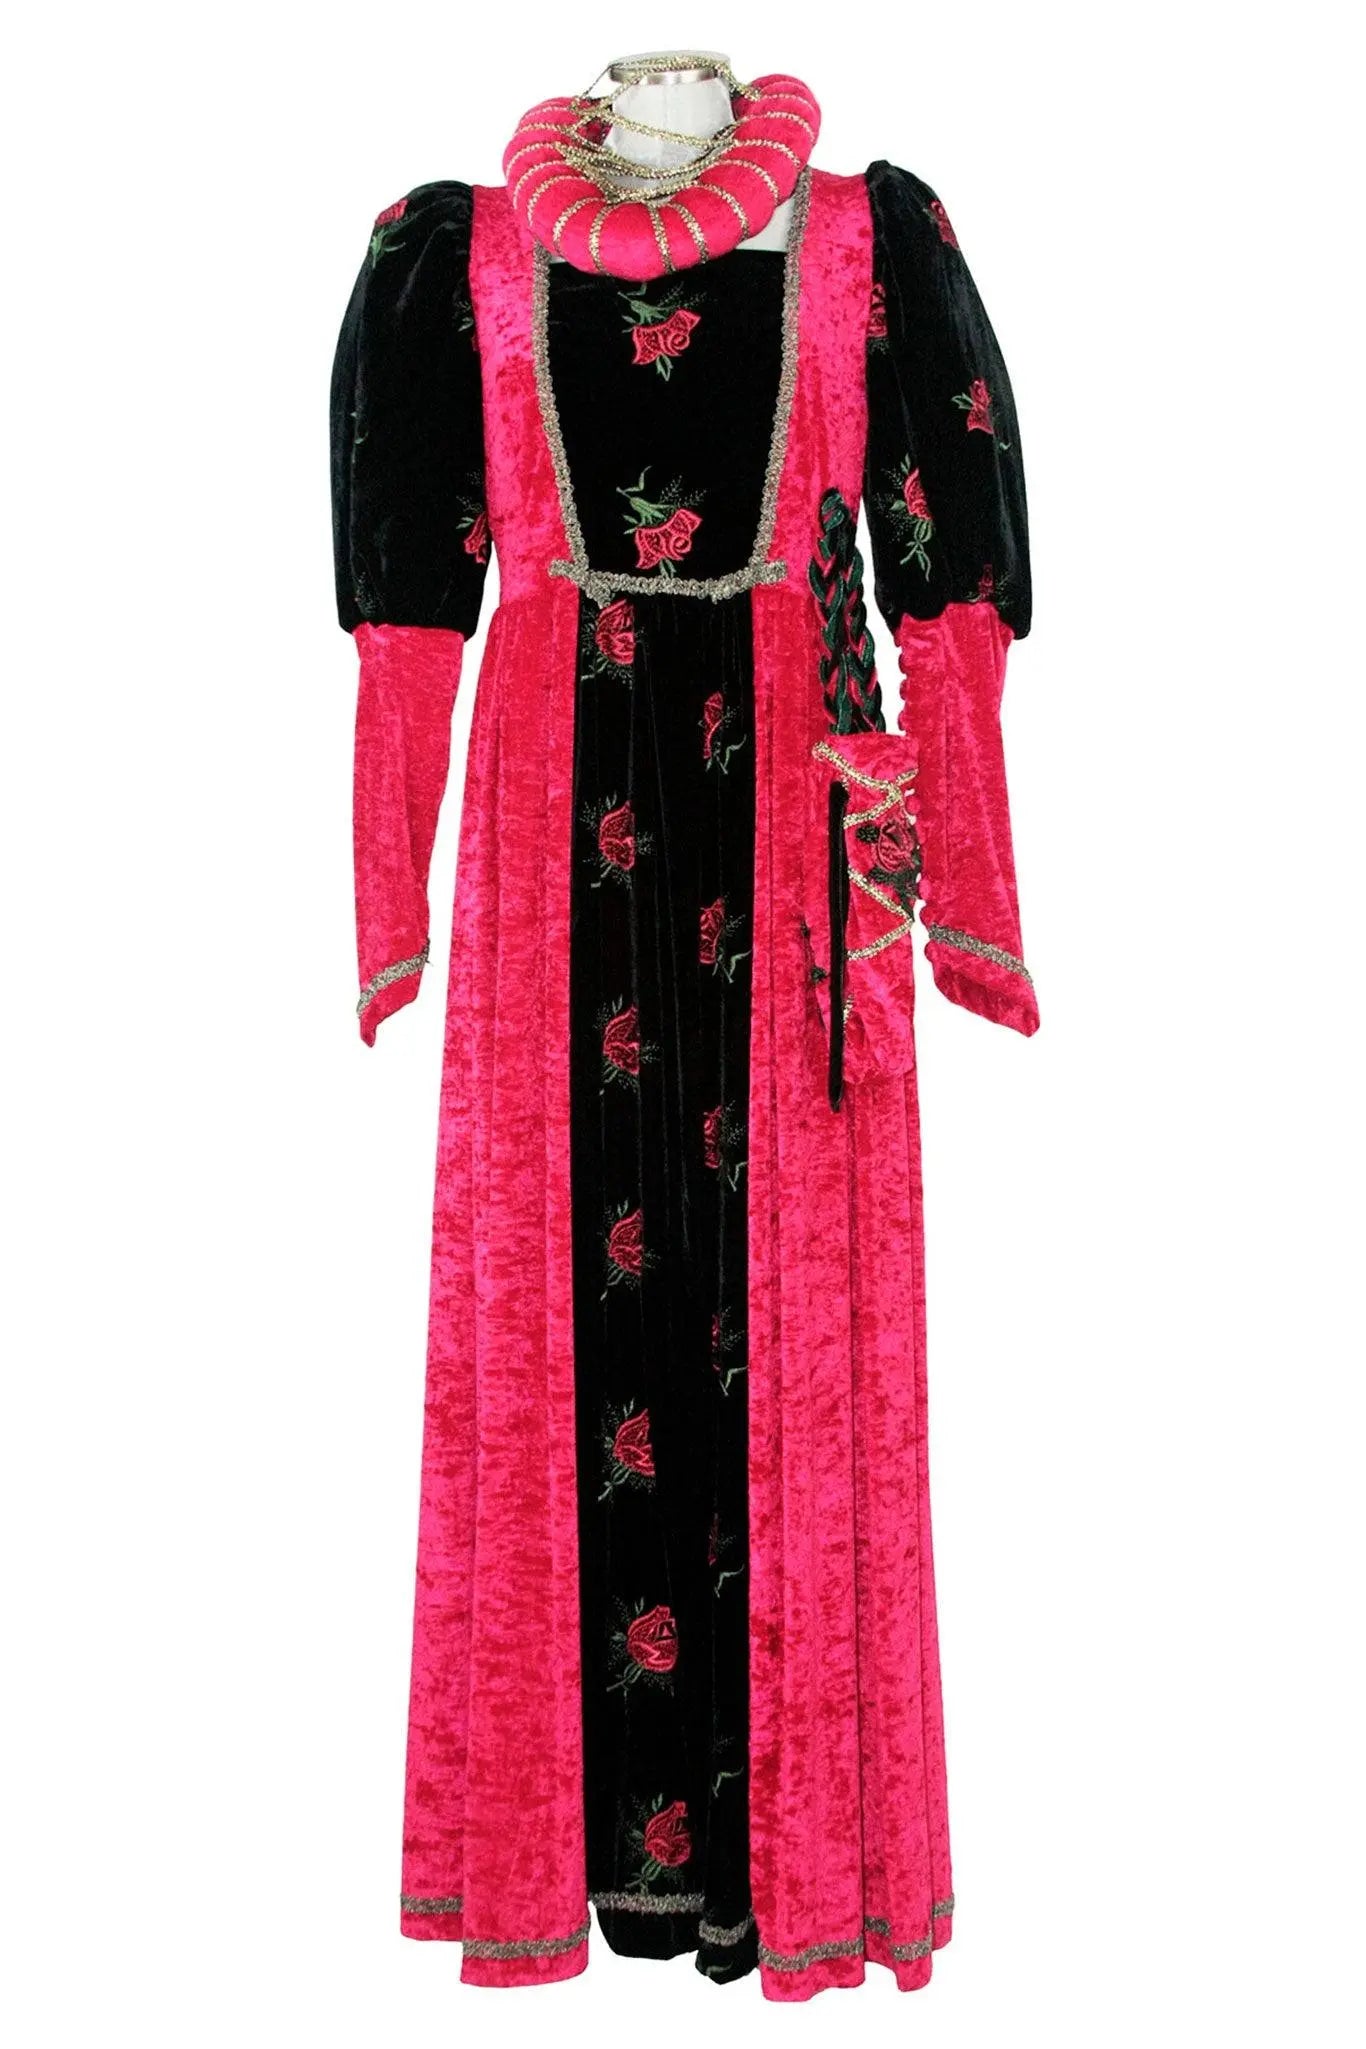 Costume donna del tardo medioevo o inizio rinascimento - storico - car